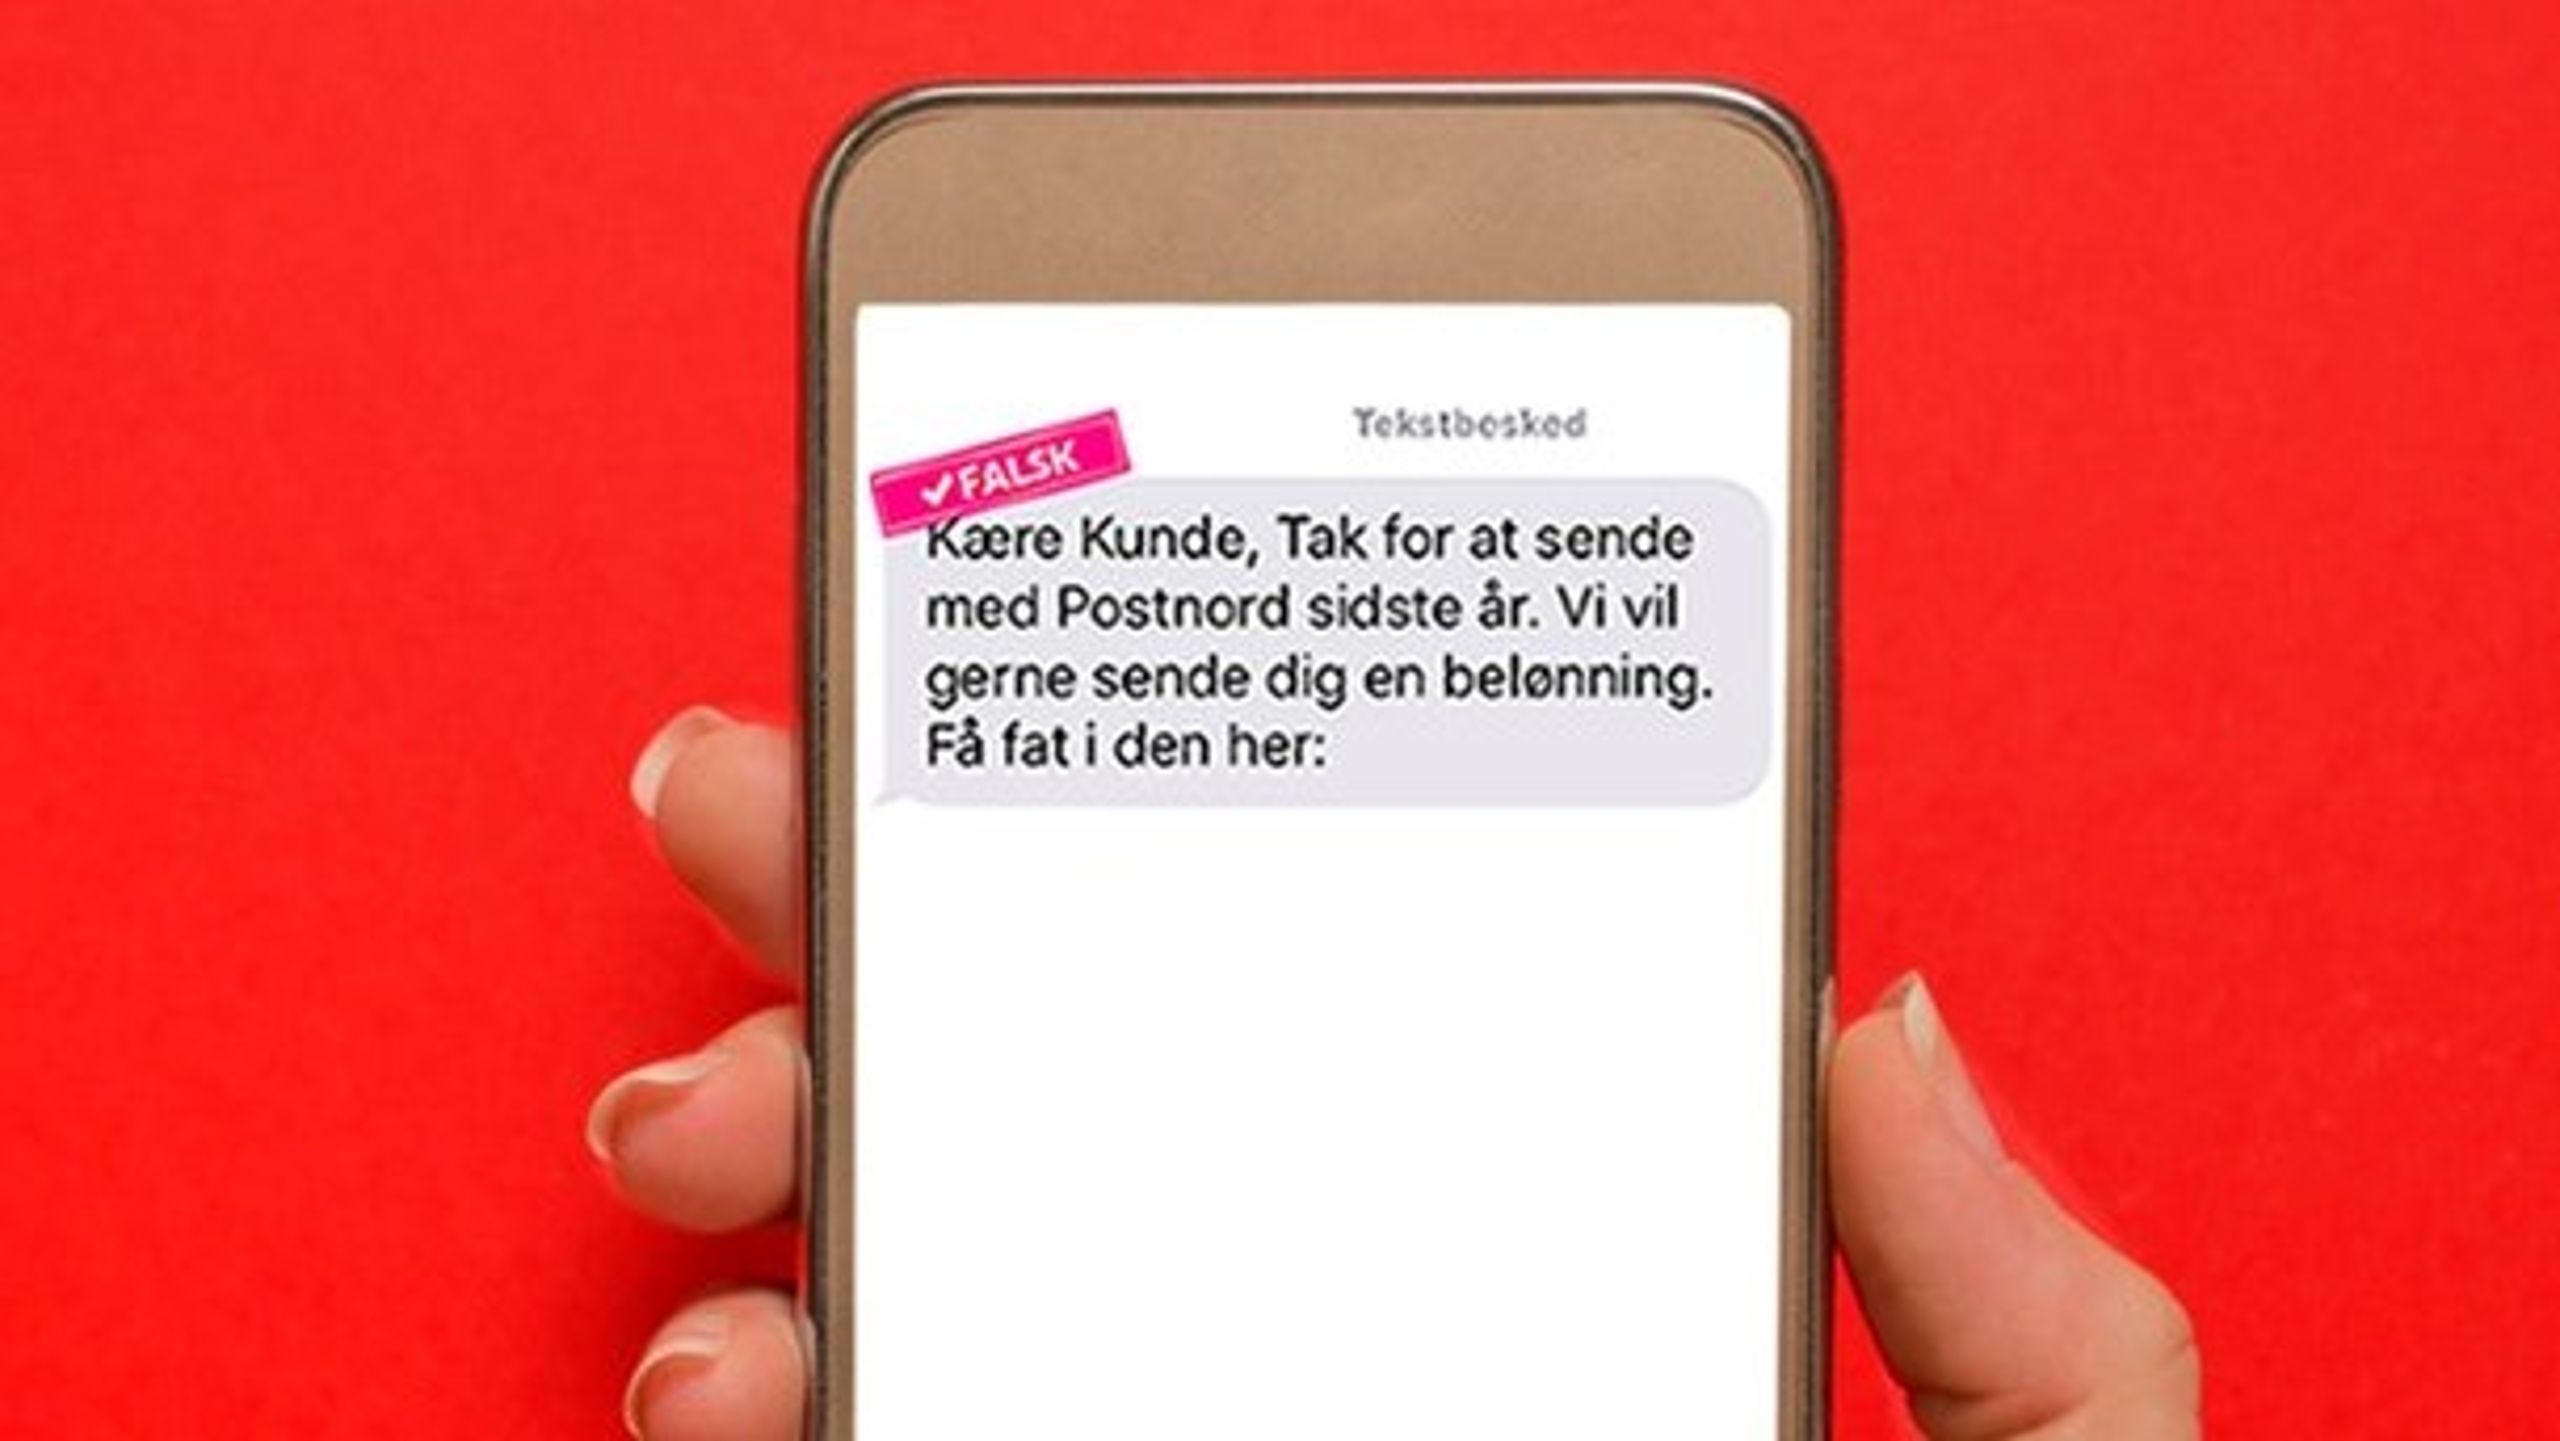 Mange danskere modtager i øjeblikket denne sms på deres mobiltelefon. Men det er et fupnummer.